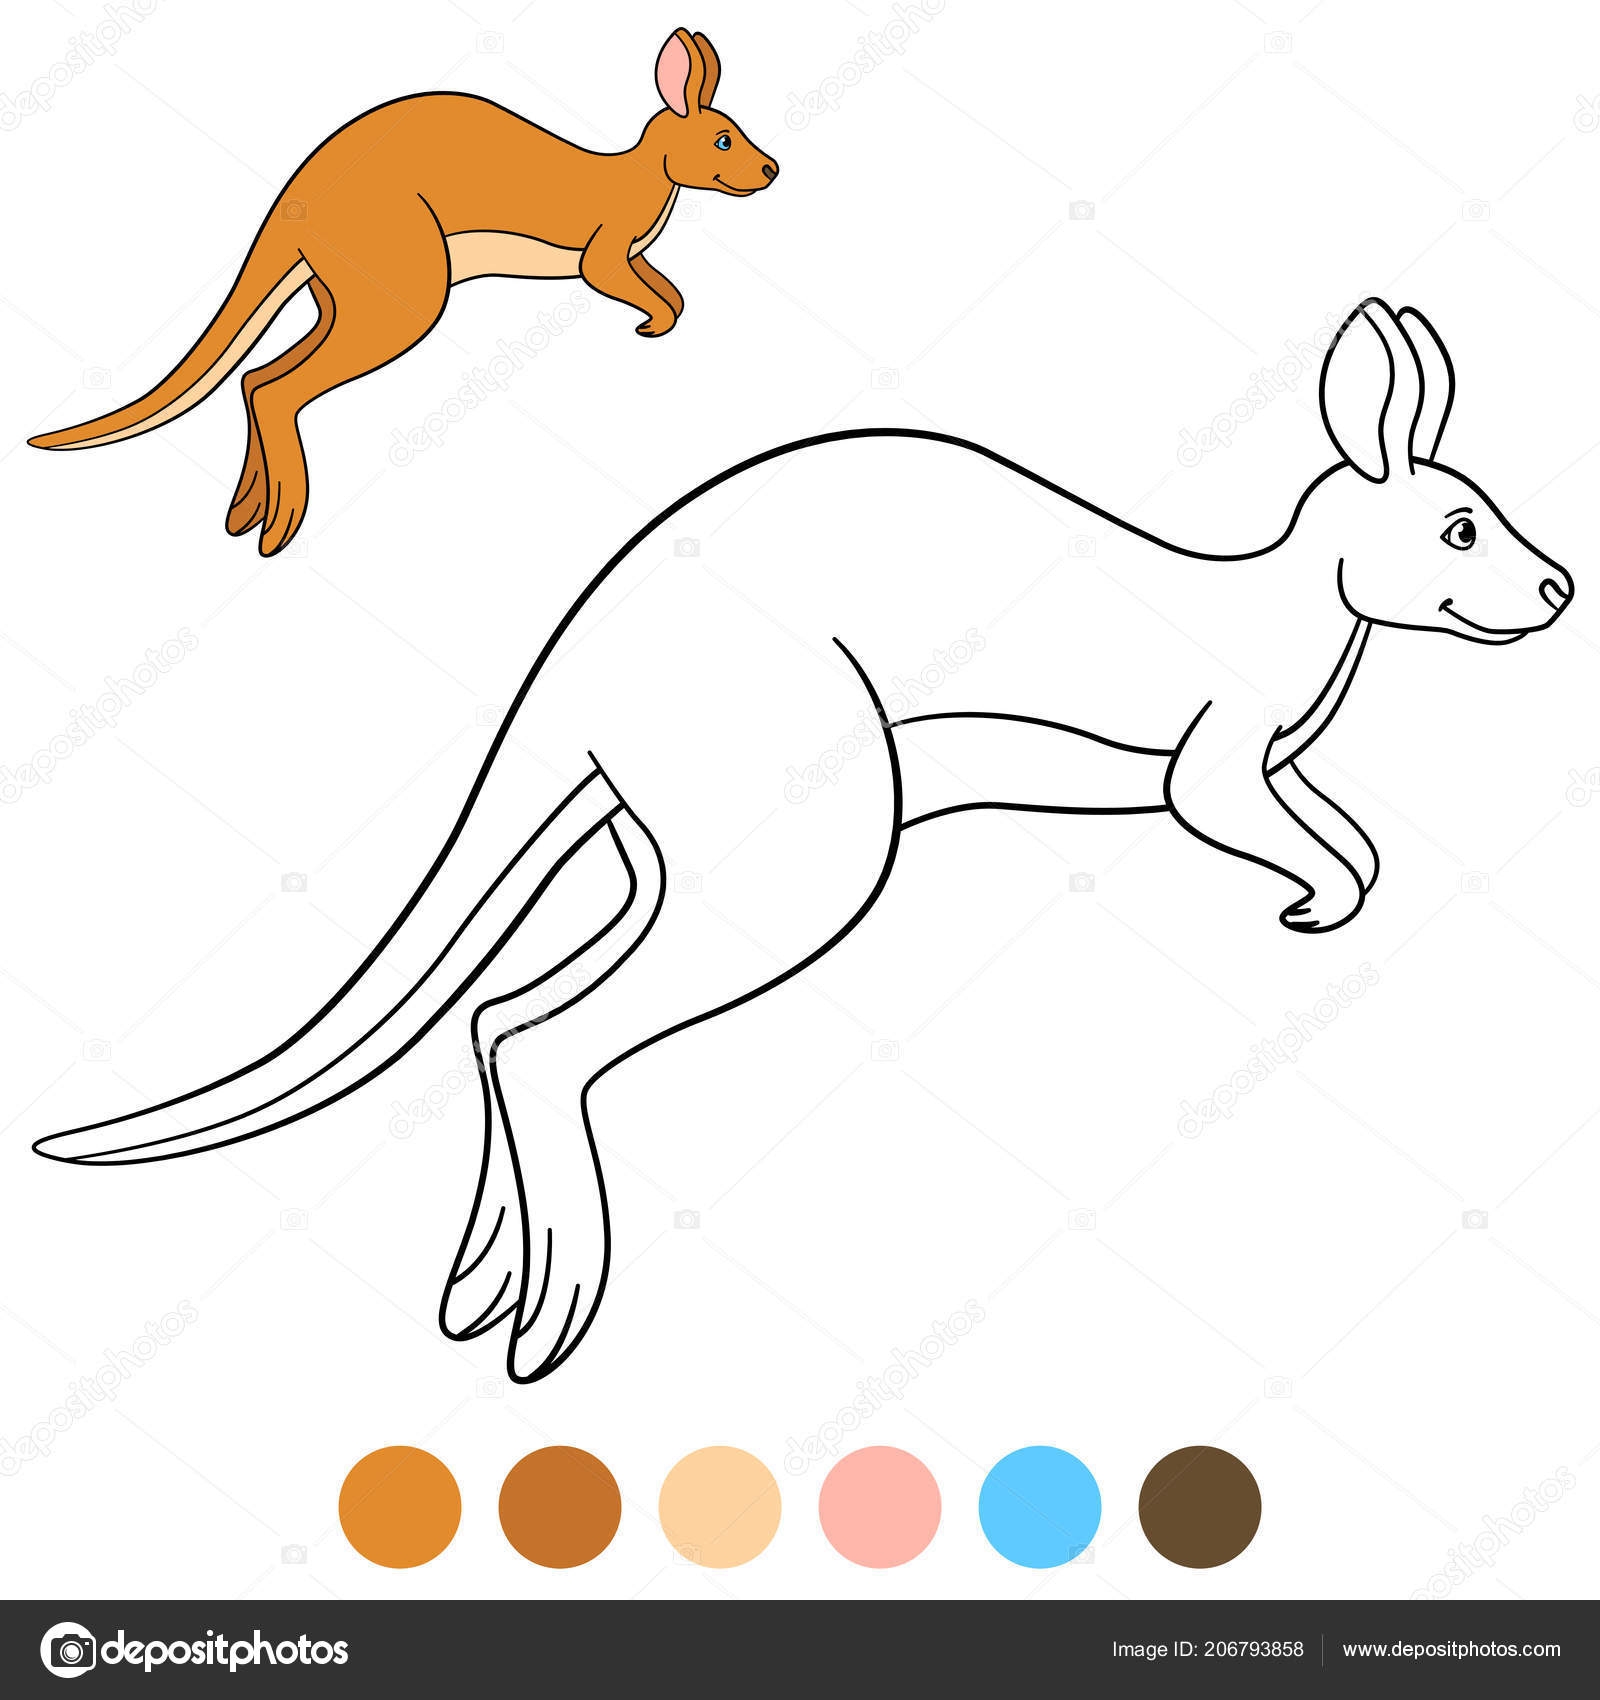 Австралия кенгуру рисунок для дошкольников